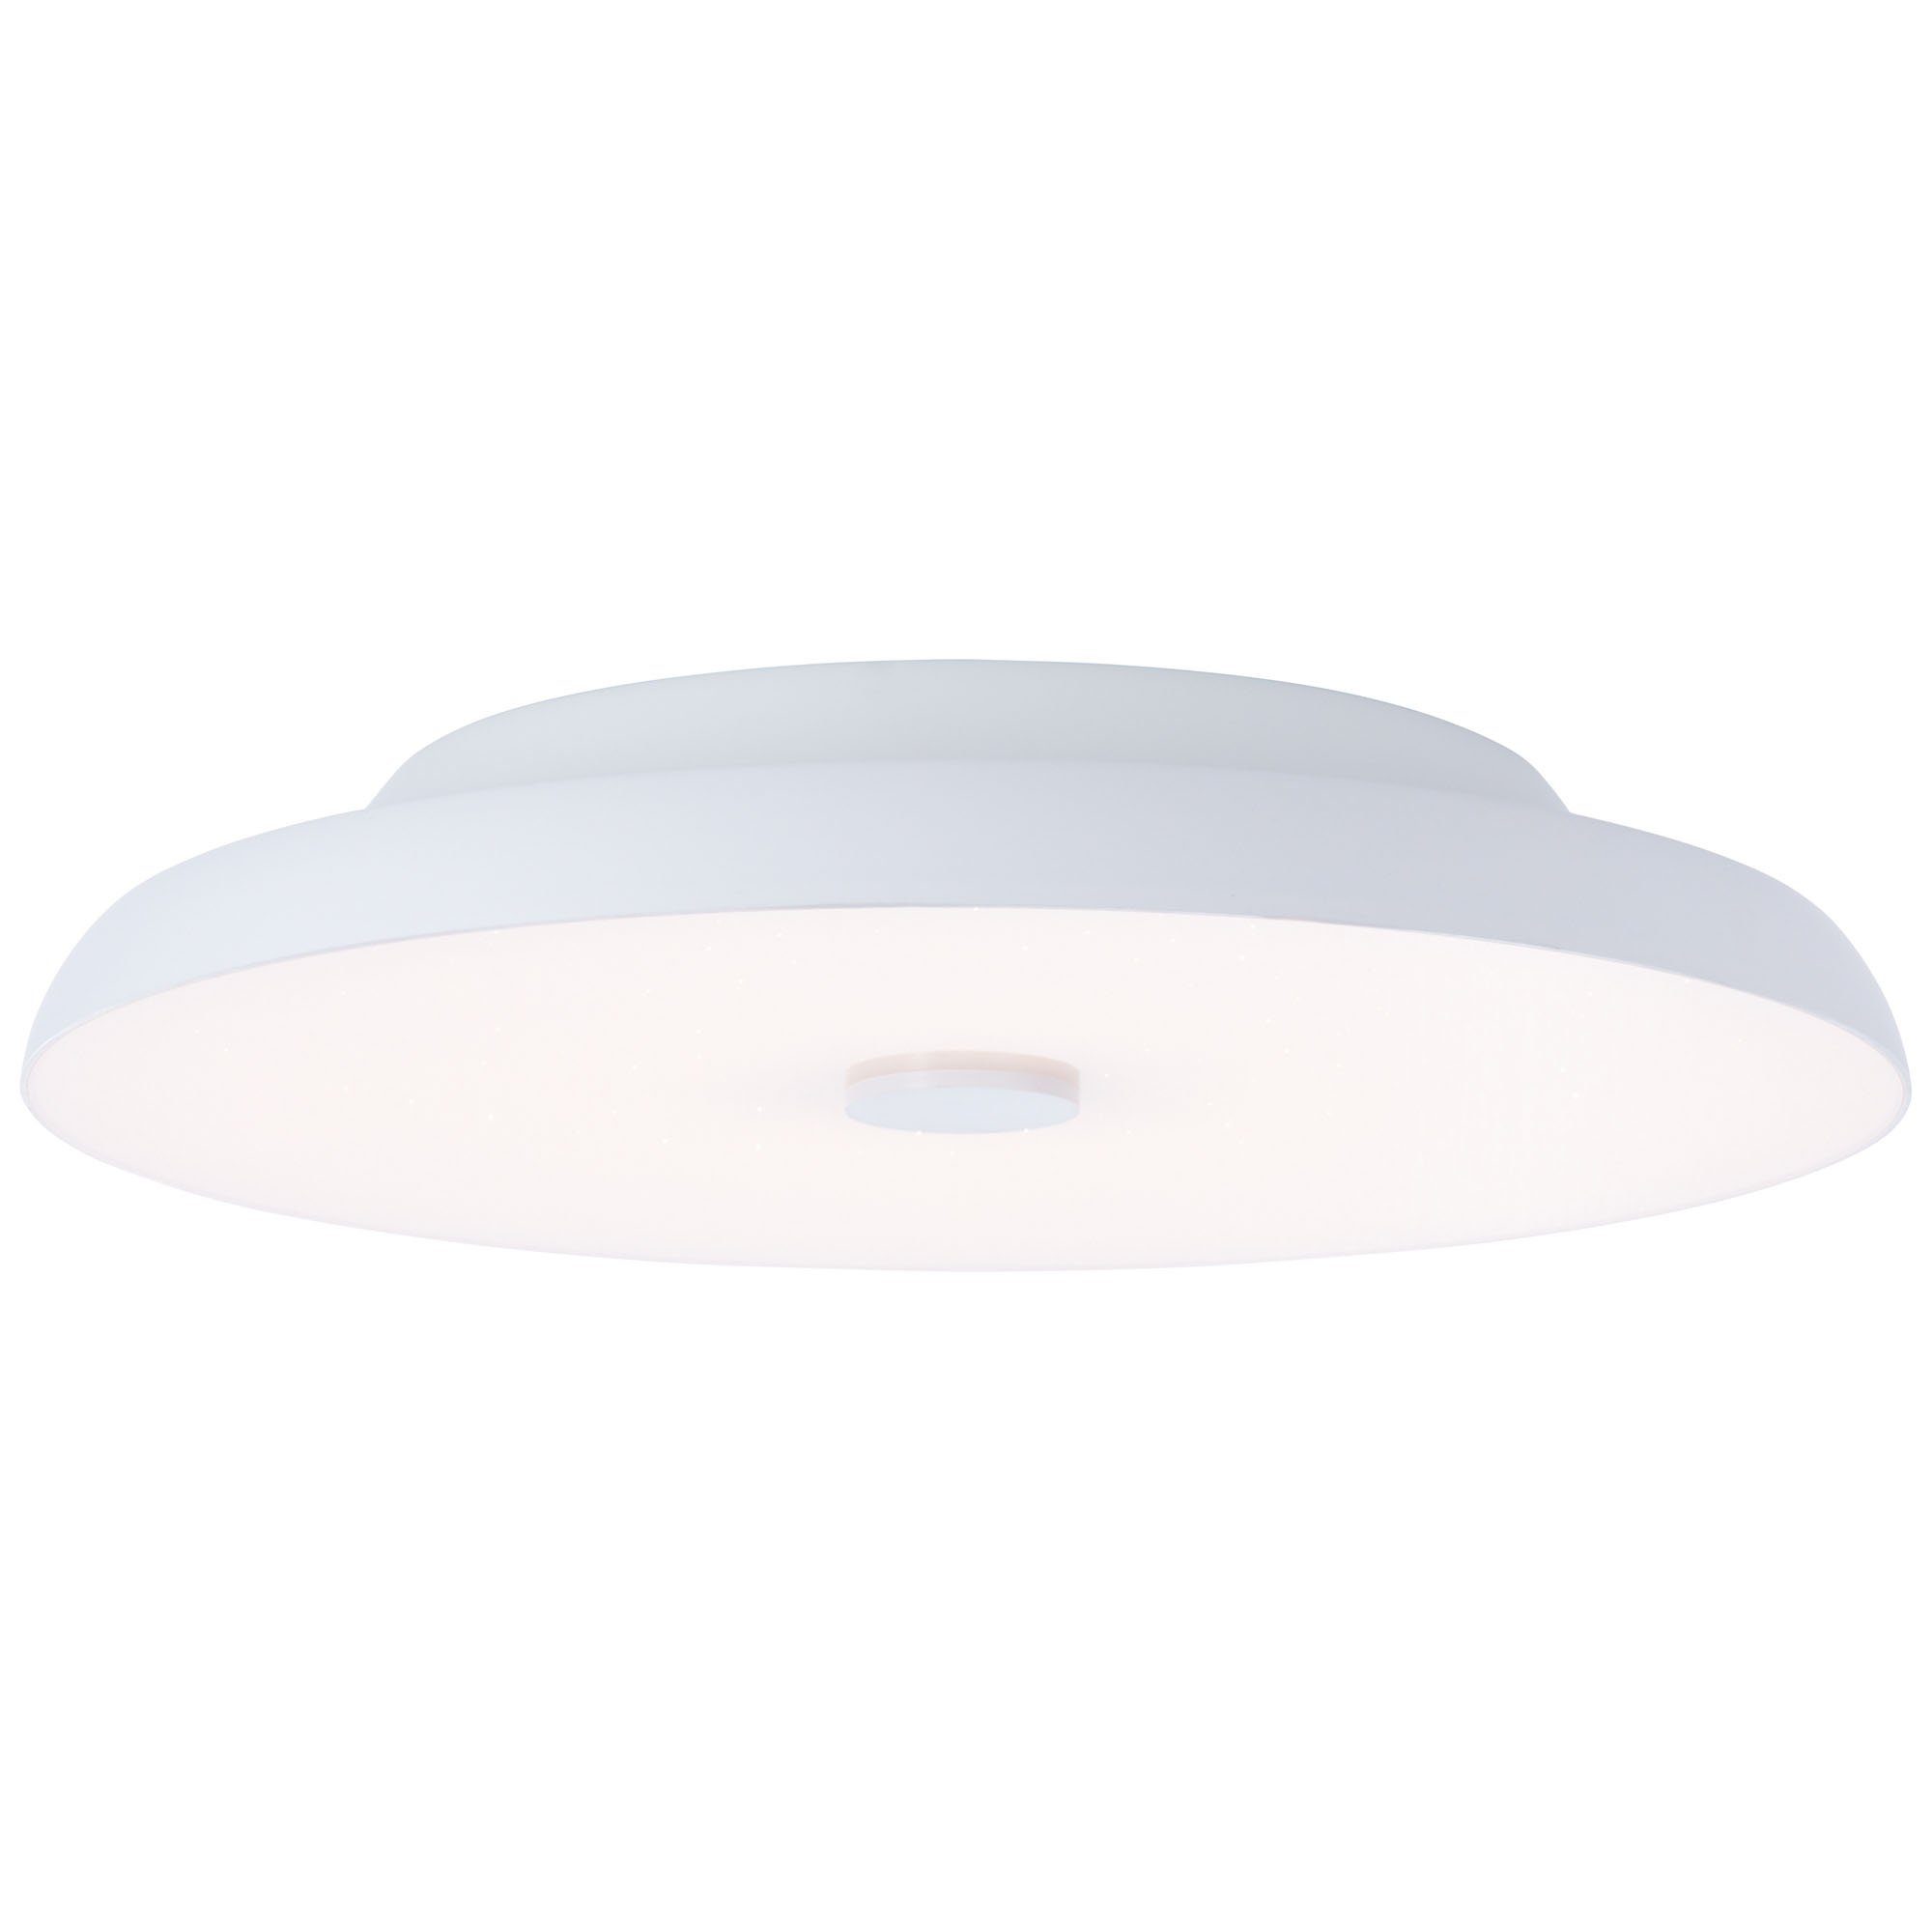 AEG LED Deckenleuchte Adora, LED wechselbar, Farbwechsler, Ø 40 cm, Lautsprecher, dimmbar, CCT, RGB-Backlight, 3900 lm, weiß | Deckenlampen